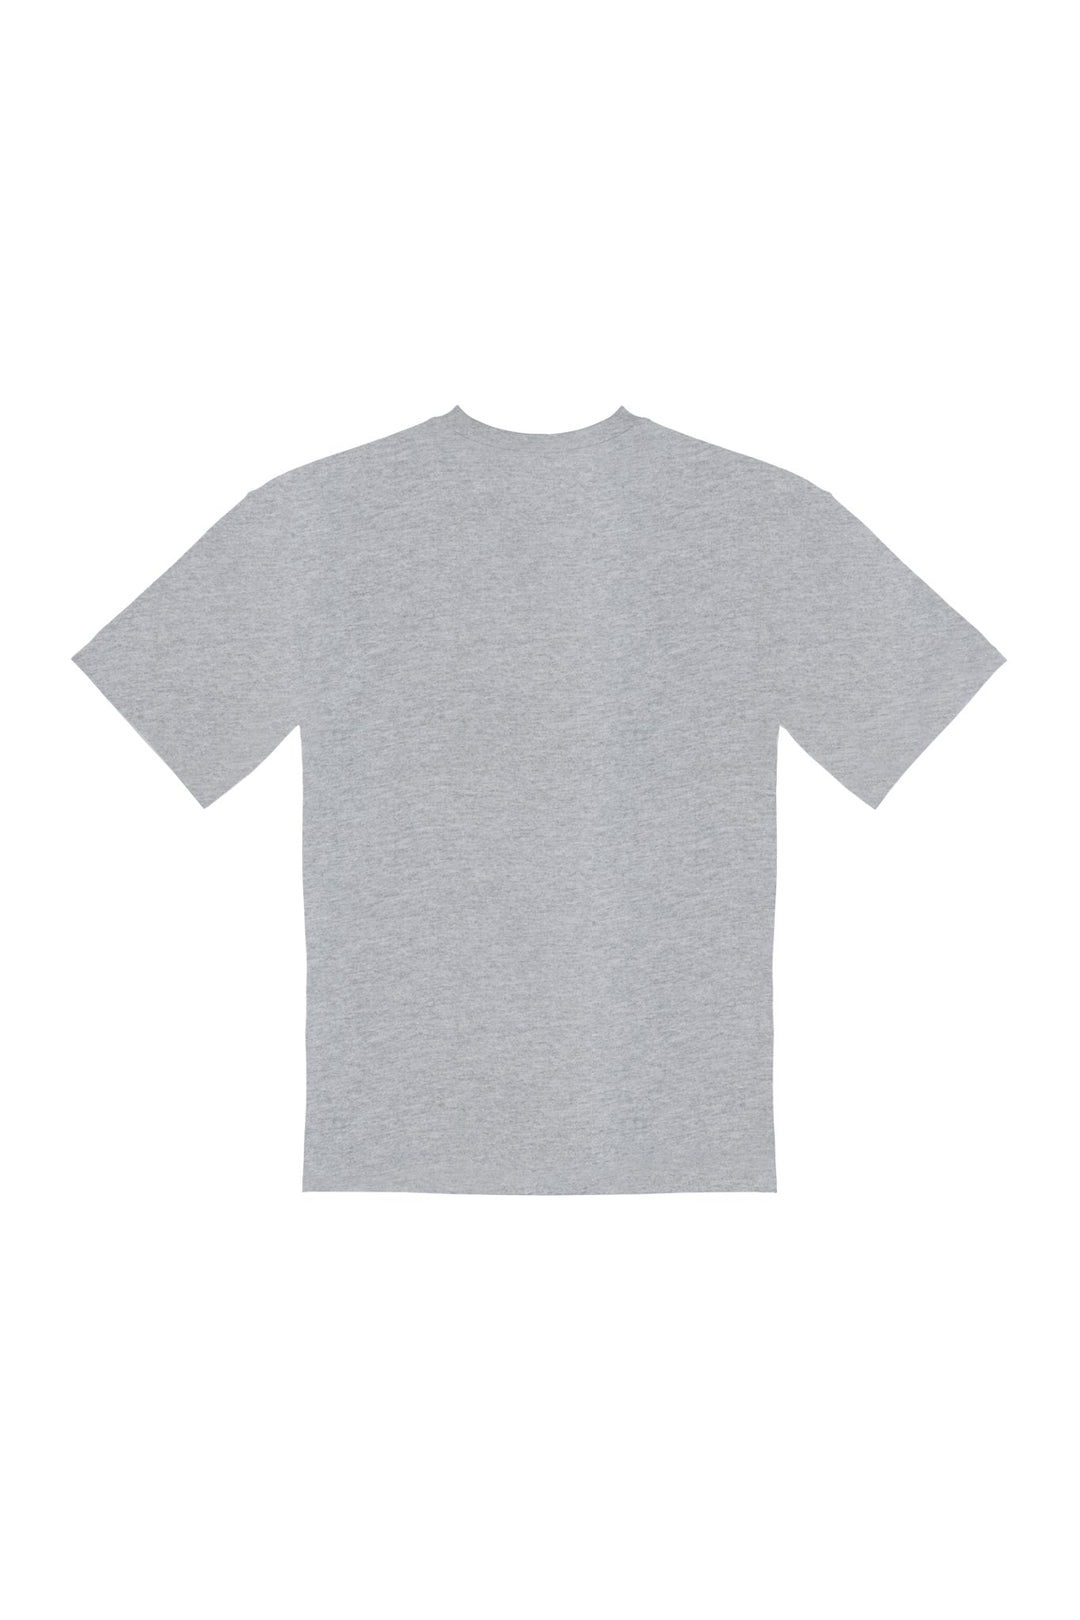 RÉSERVOIR・T - shirt unisexe・Gris - Le Cartel